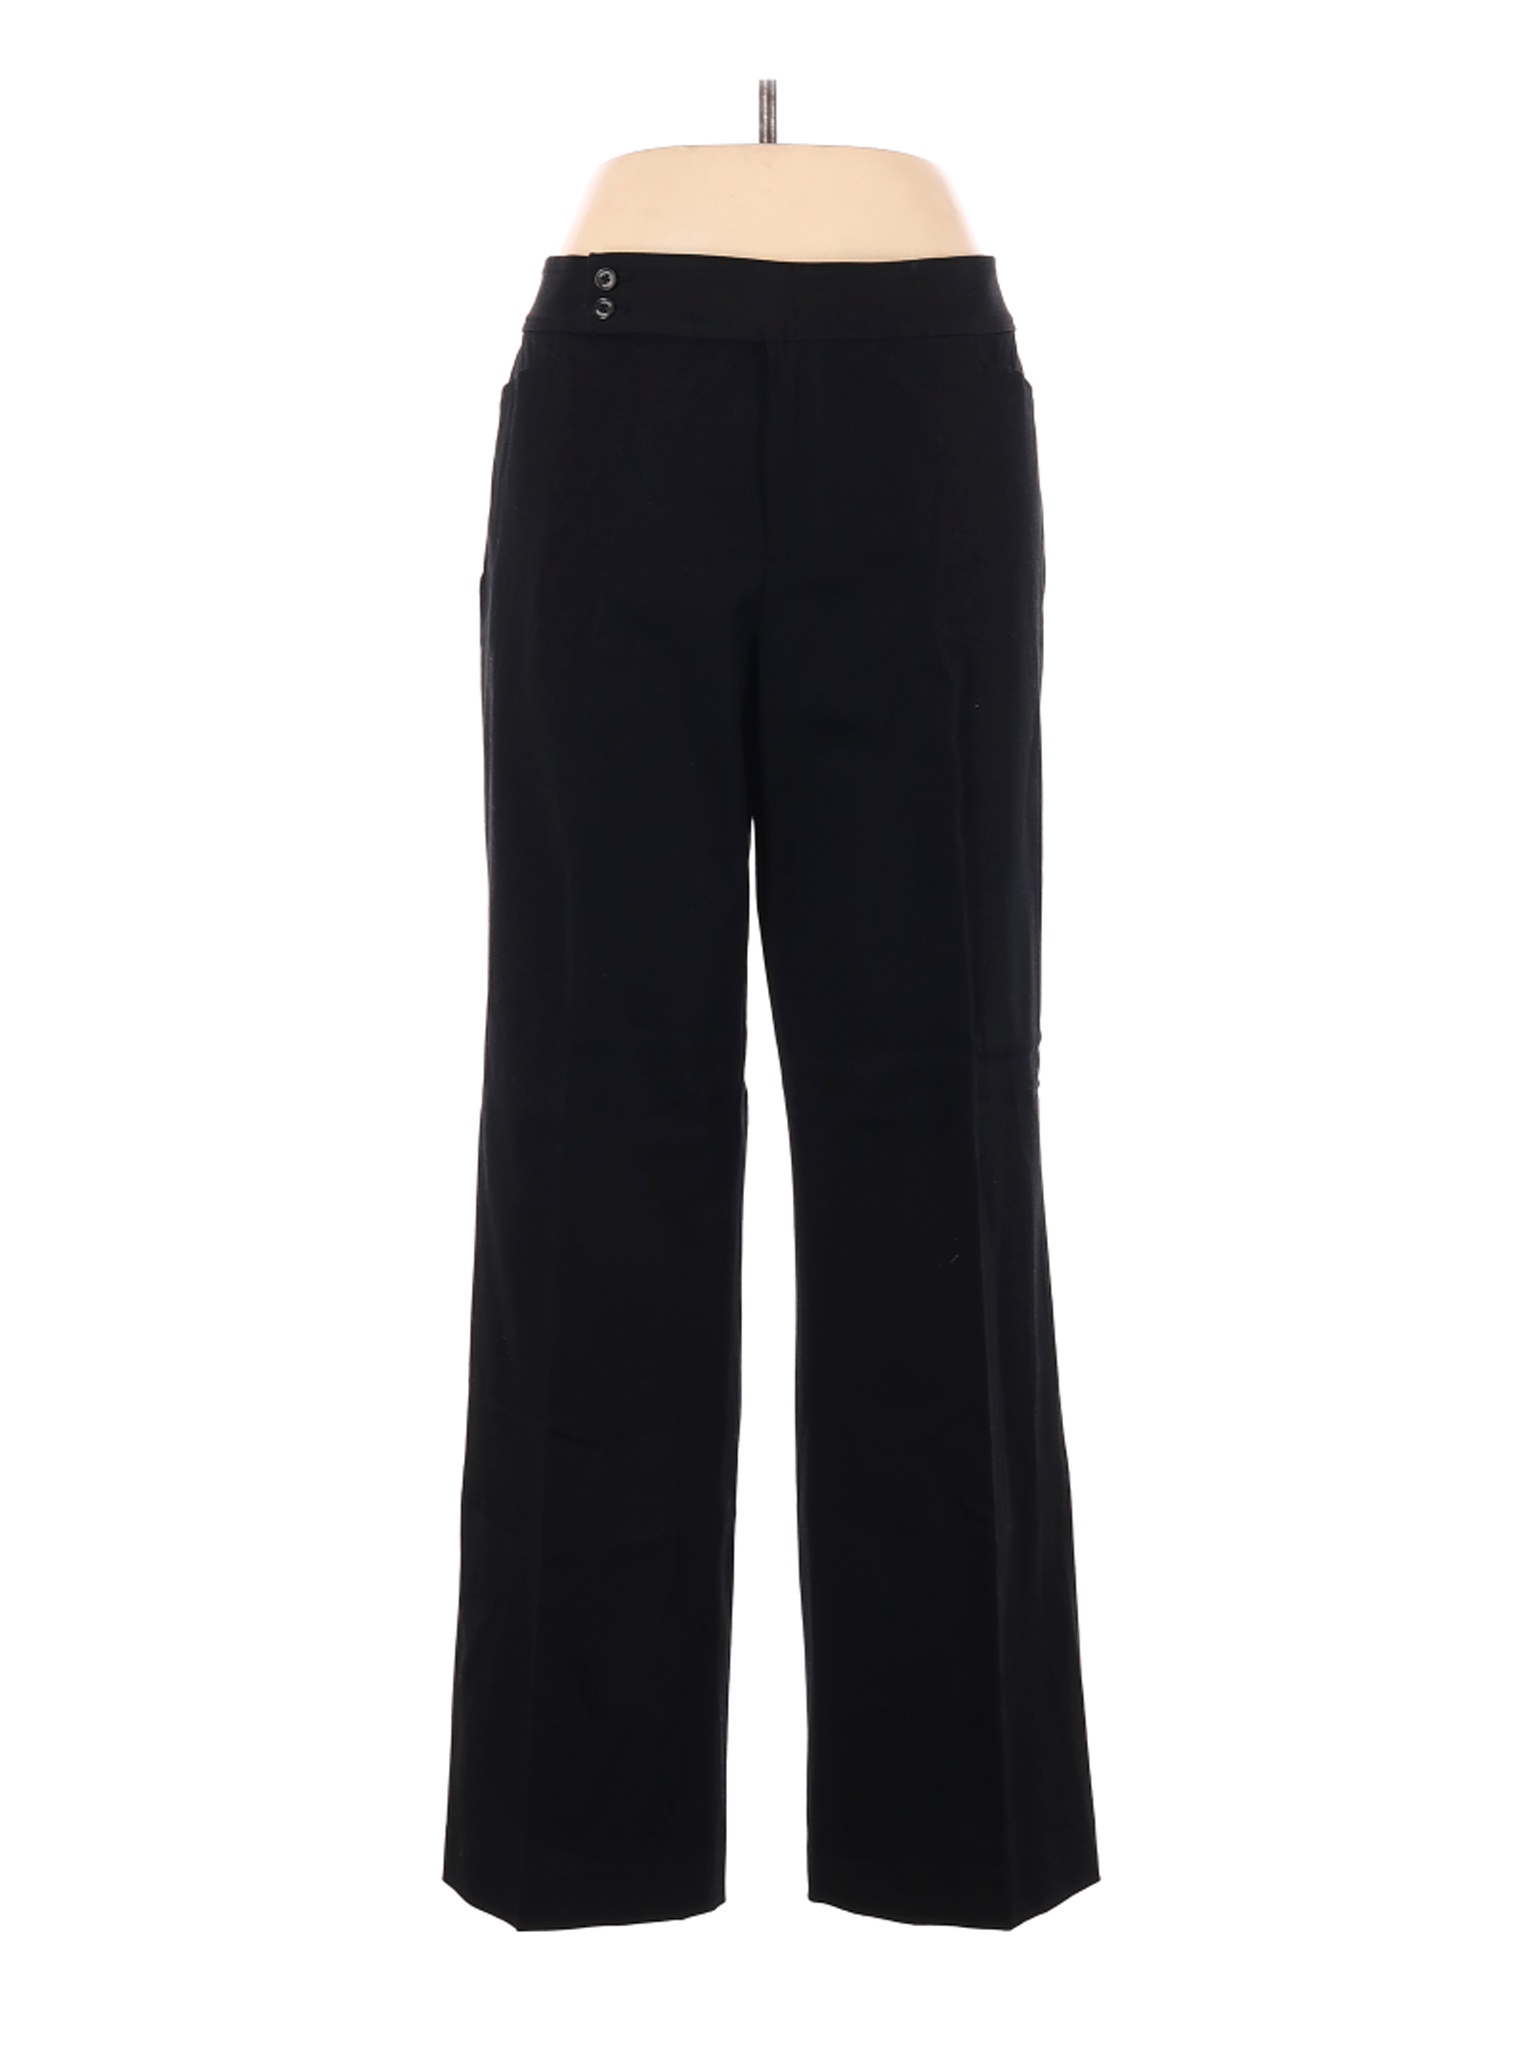 Chaps Women Black Dress Pants 16 | eBay